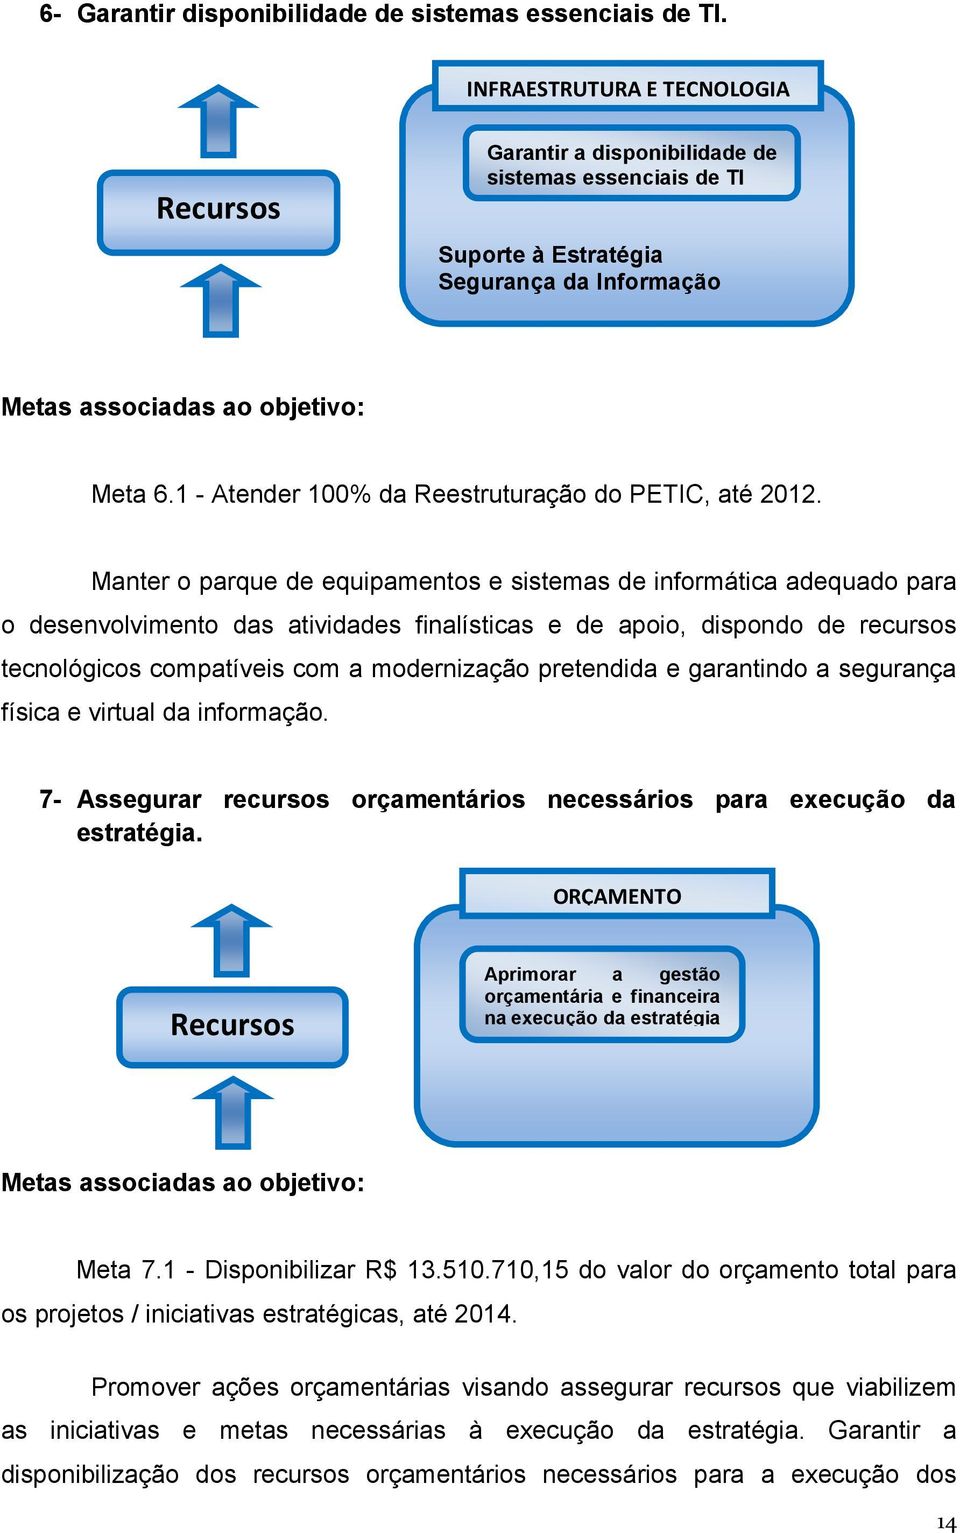 1 - Atender 100% da Reestruturação do PETIC, até 2012.